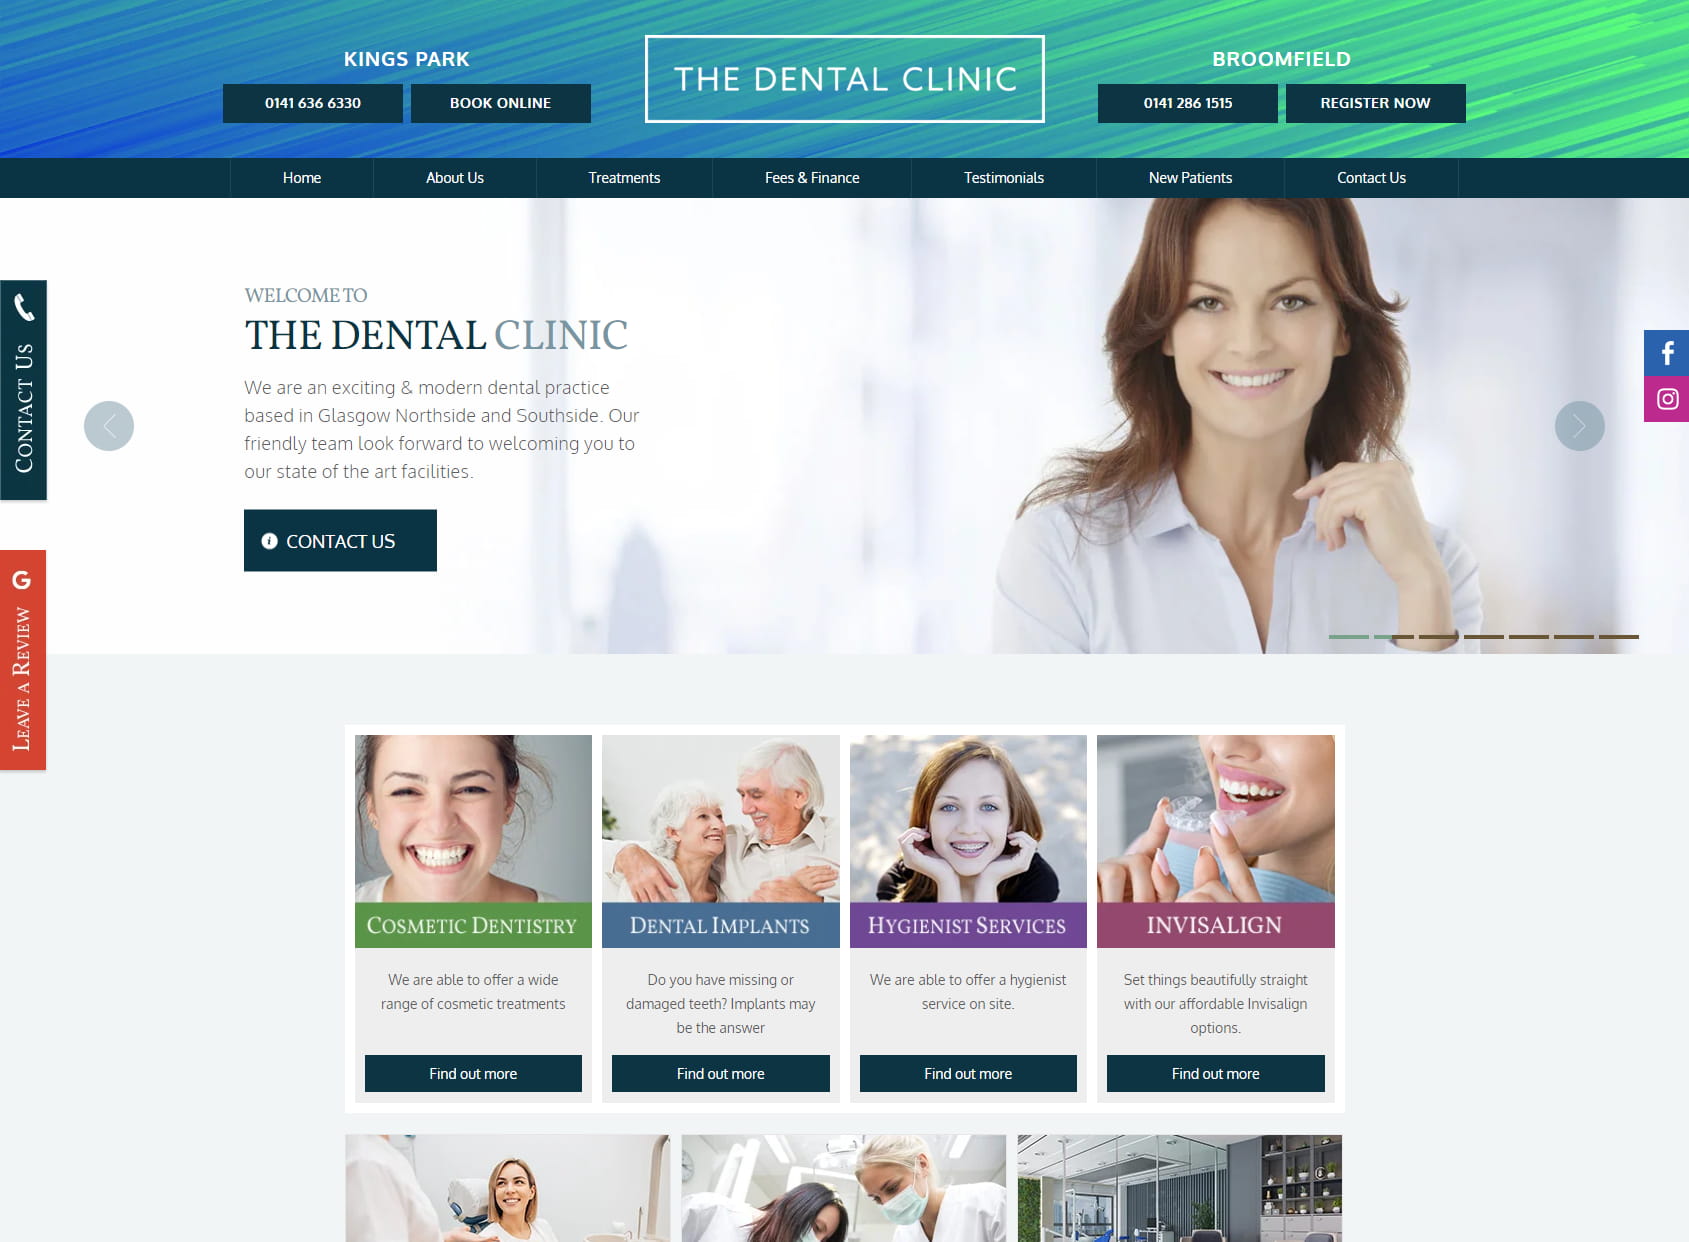 The Dental Clinic - Kings Park